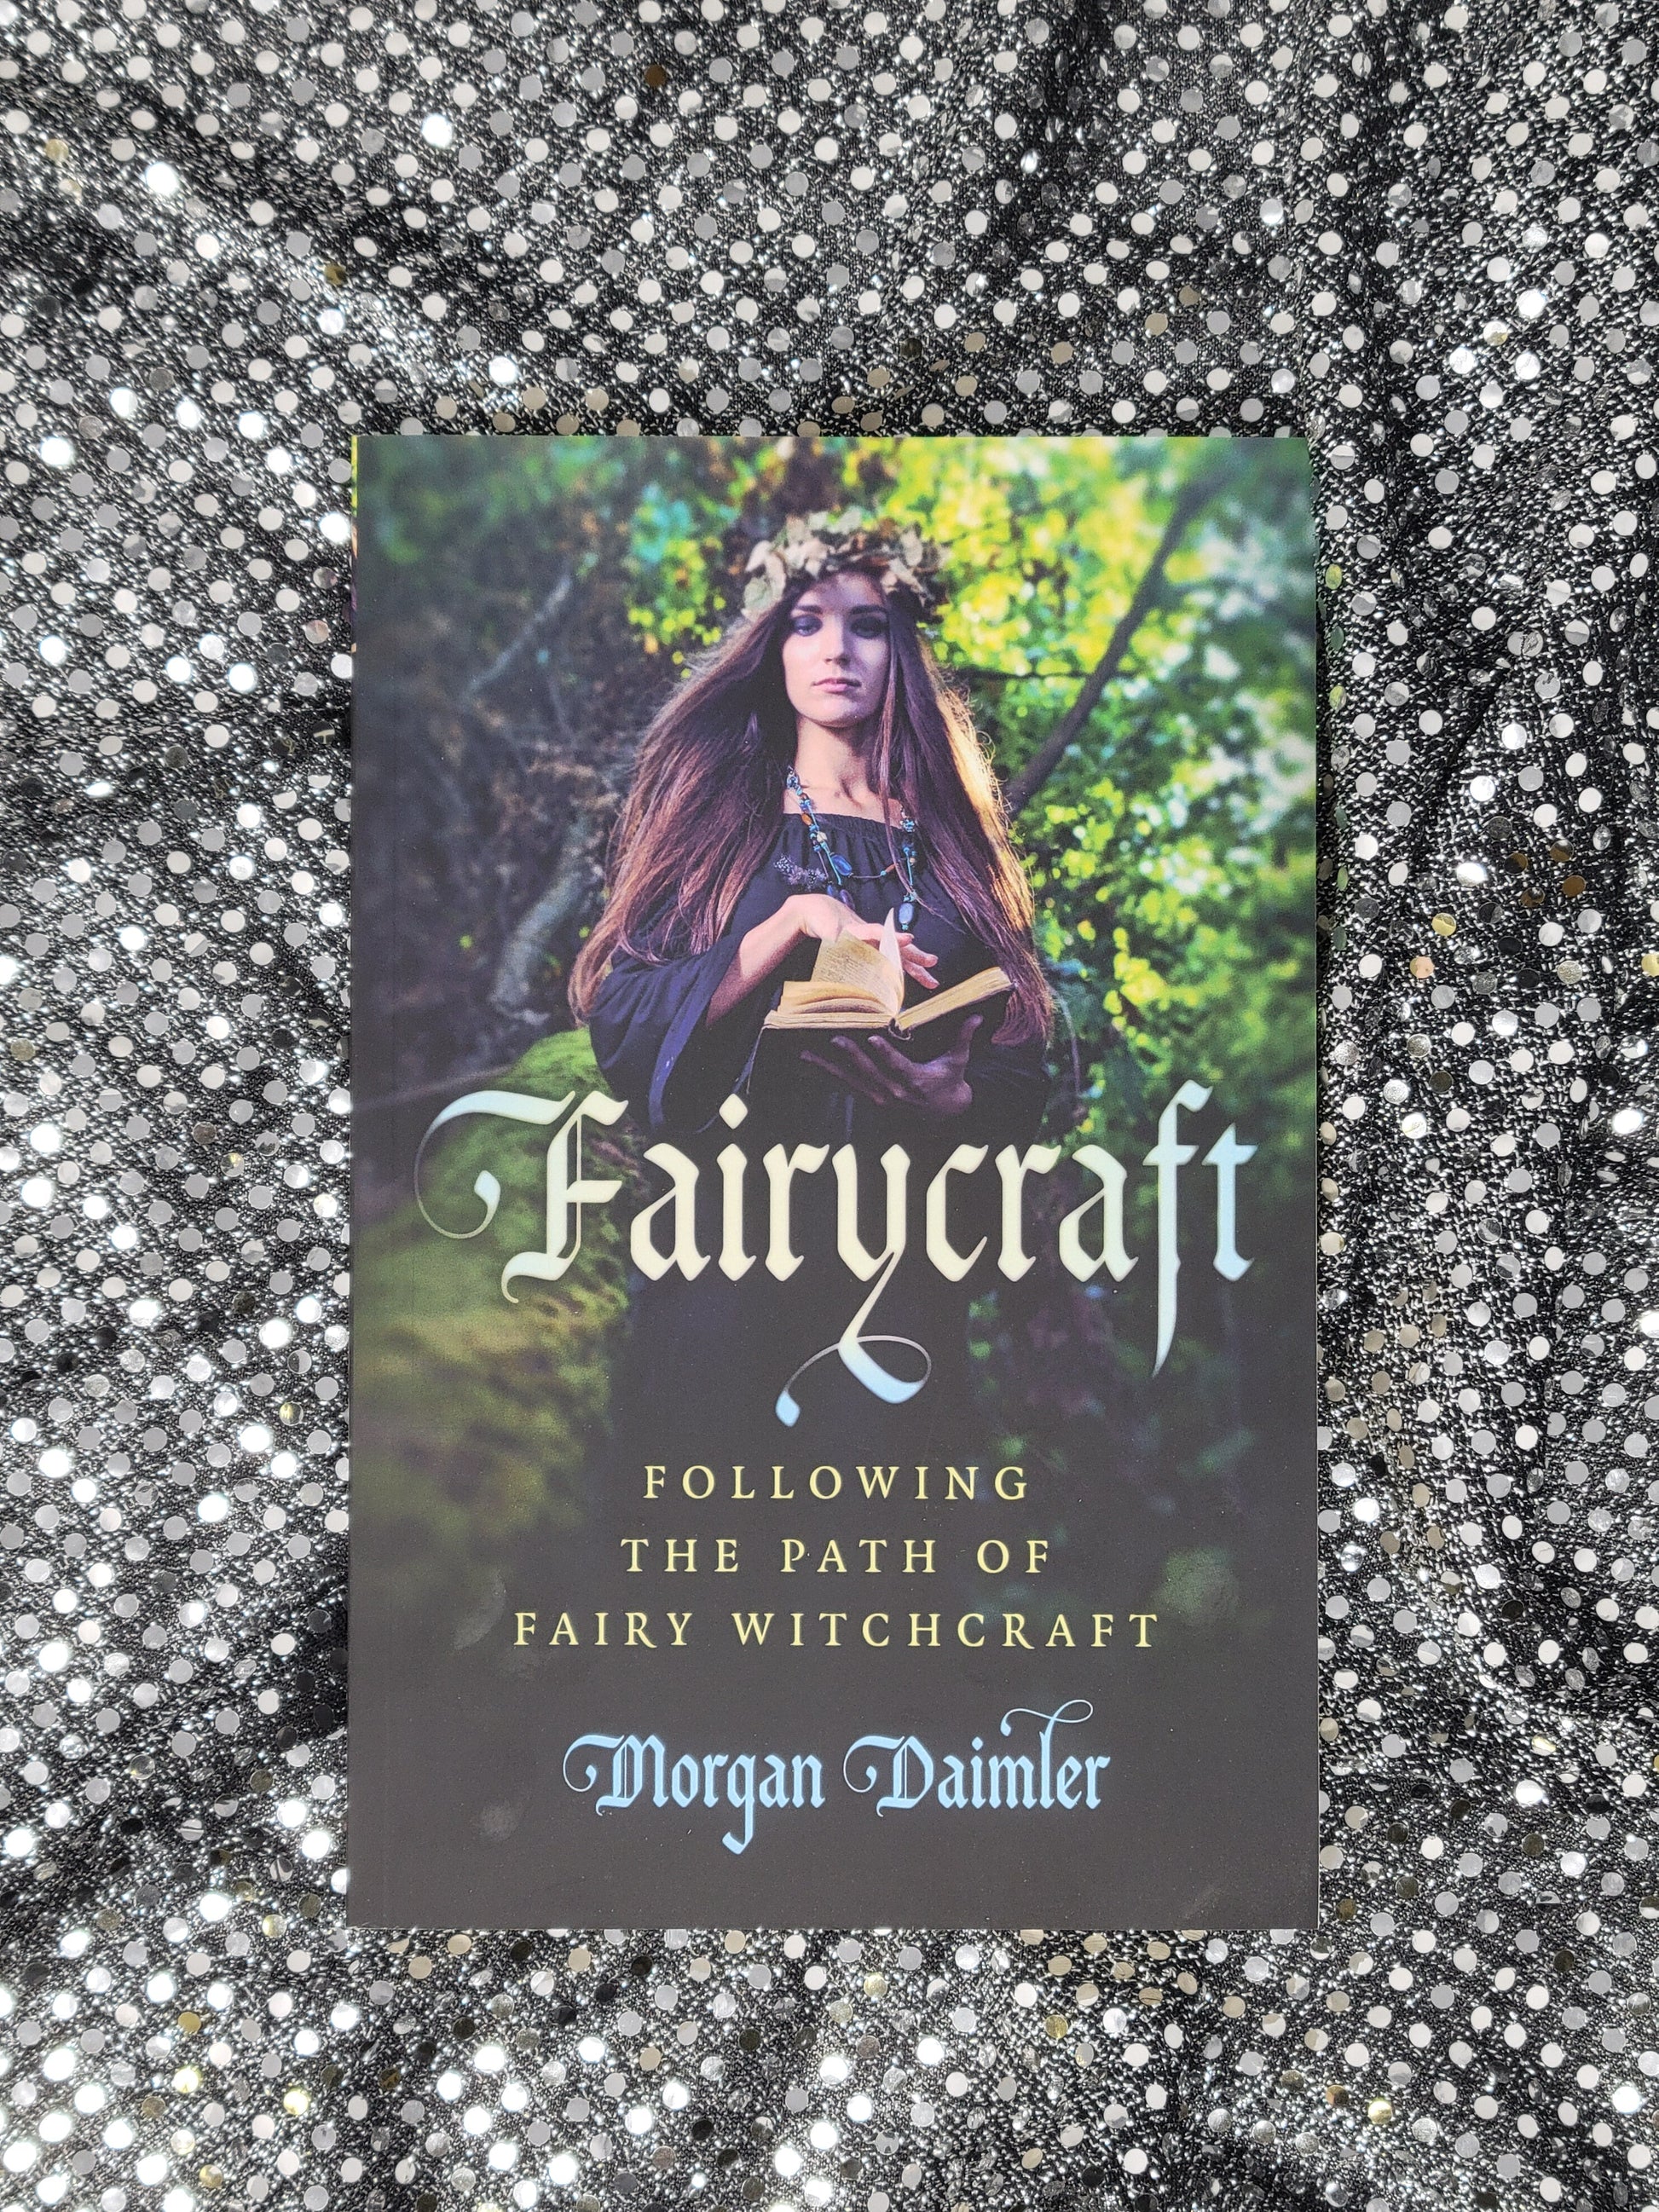 Fairycraft -by Morgan Daimler